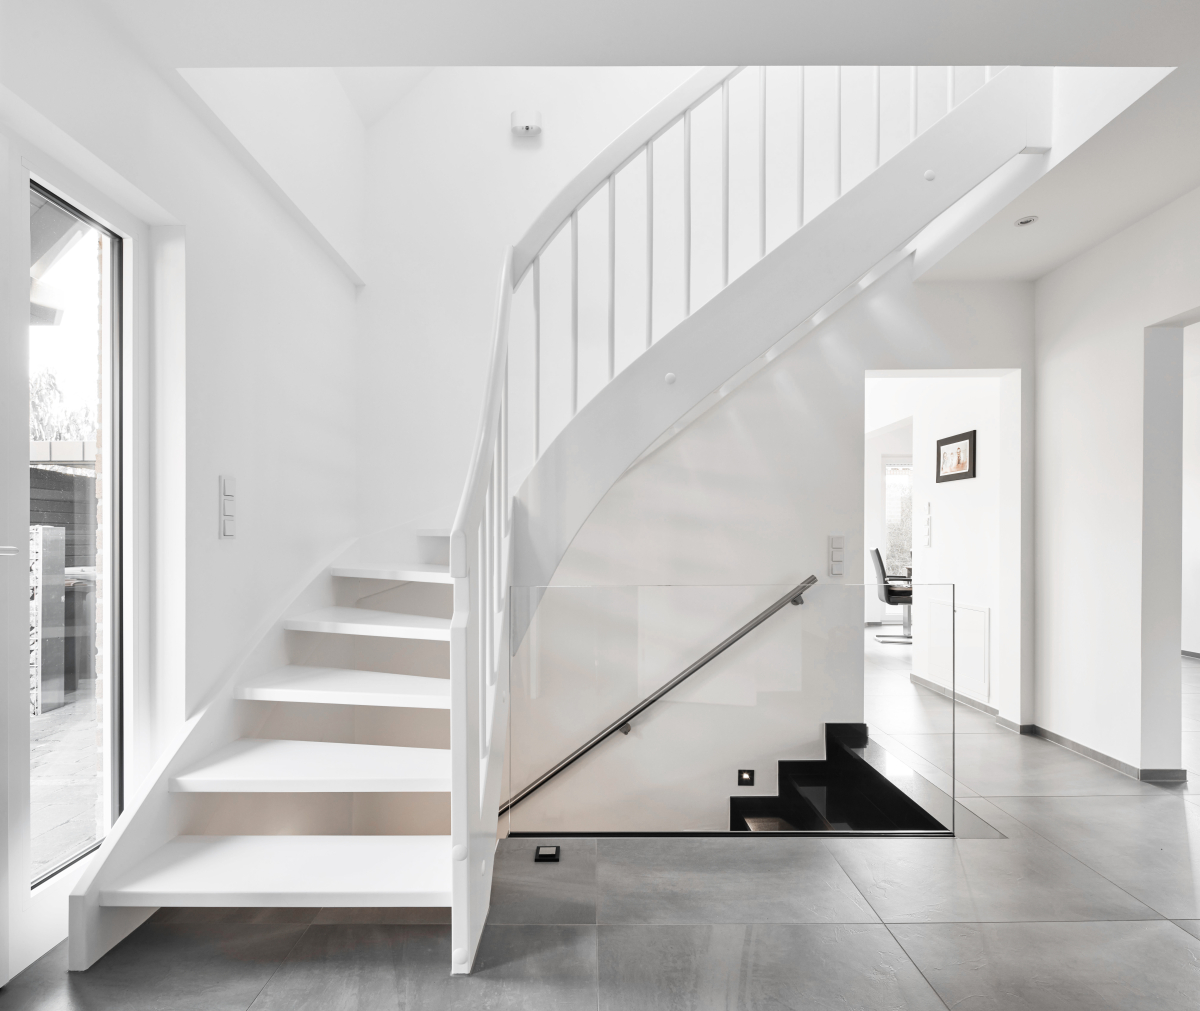 Elegante Leichtigkeit: Die weiße Treppe fügt sich optisch in den Raum ein und ist dank der schimmernden Oberflächen ein echter Hingucker